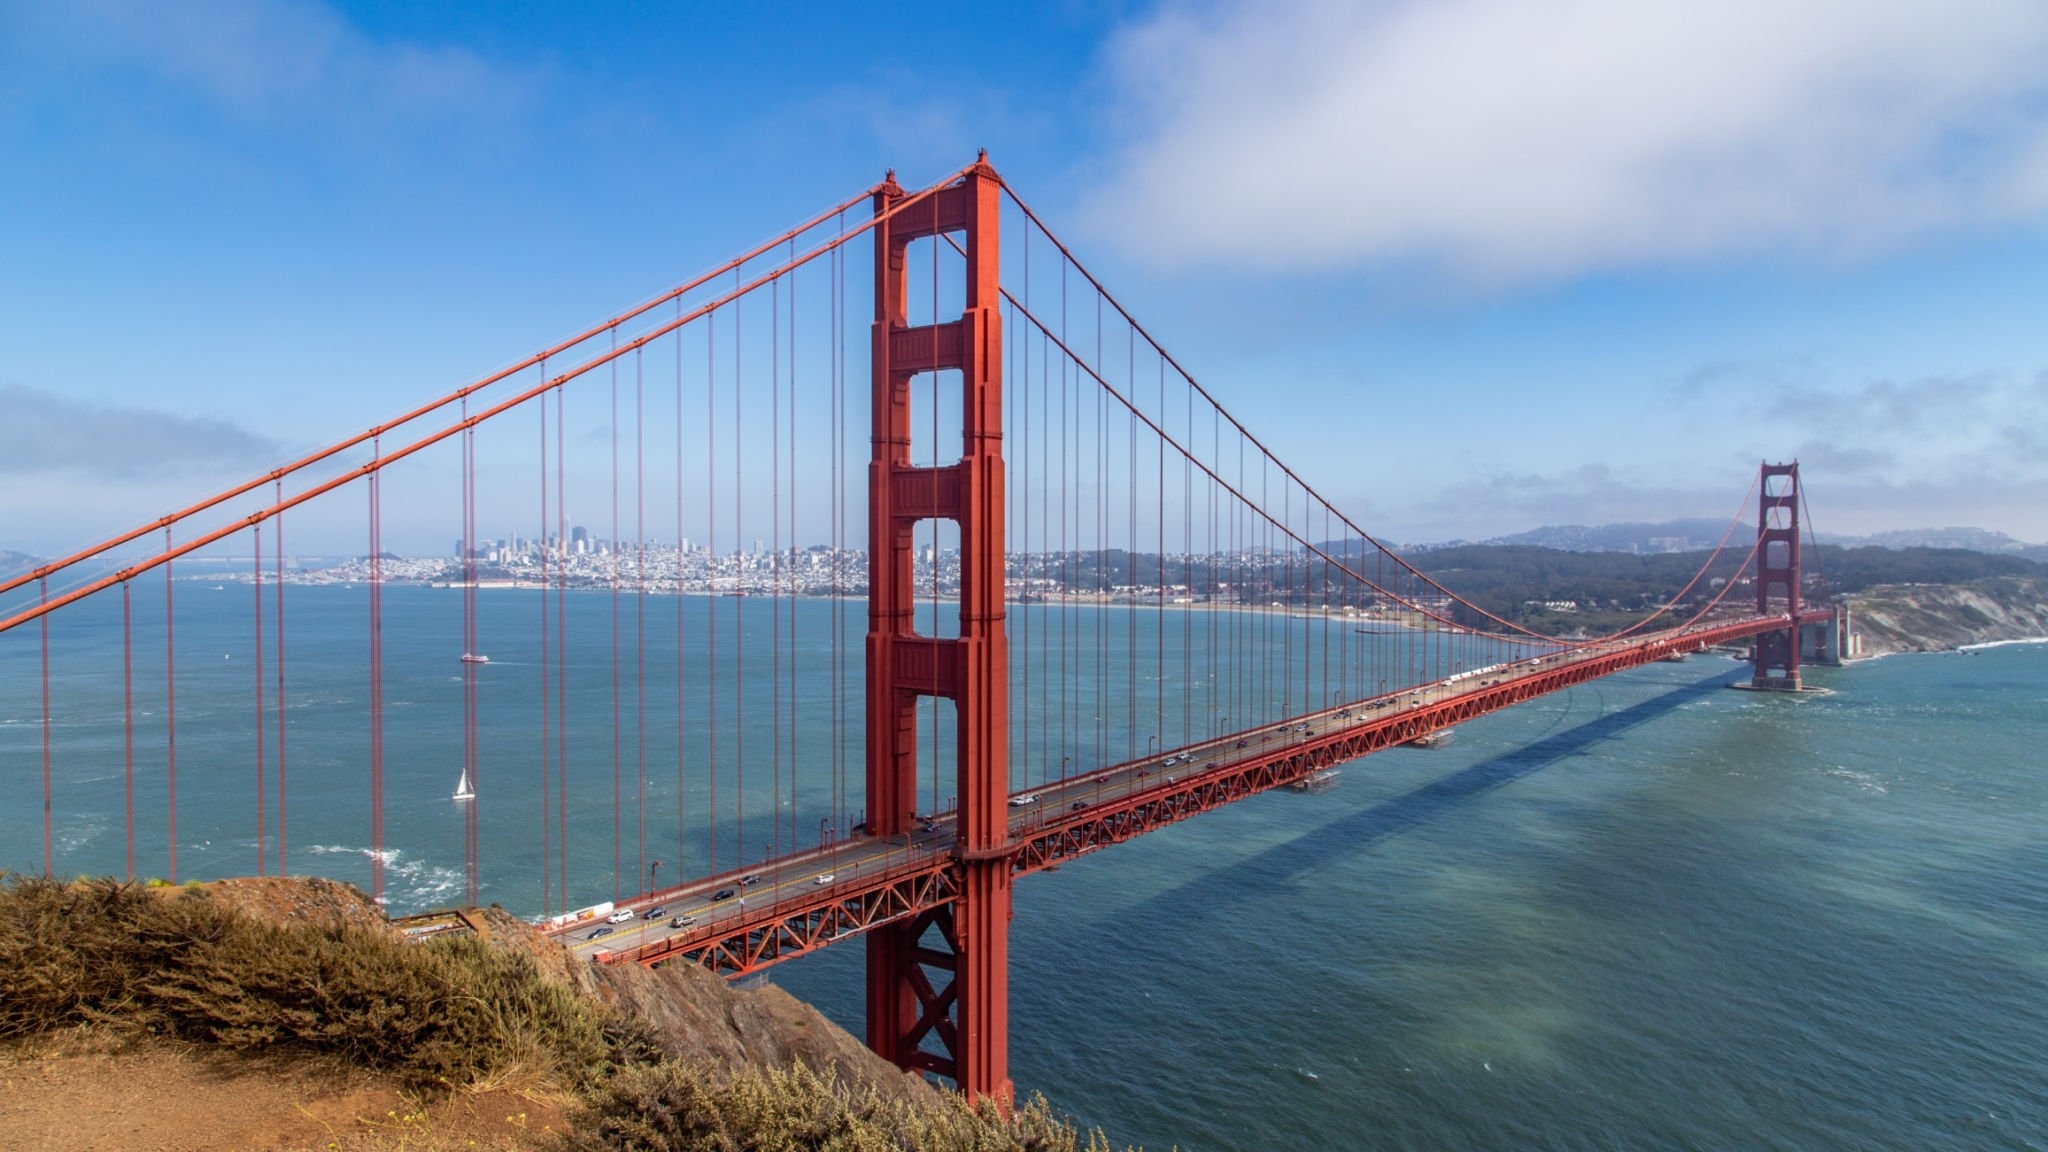 Turismo em San Francisco: guia de viagem | Ponte Golden Gate Bridge | Conexão123